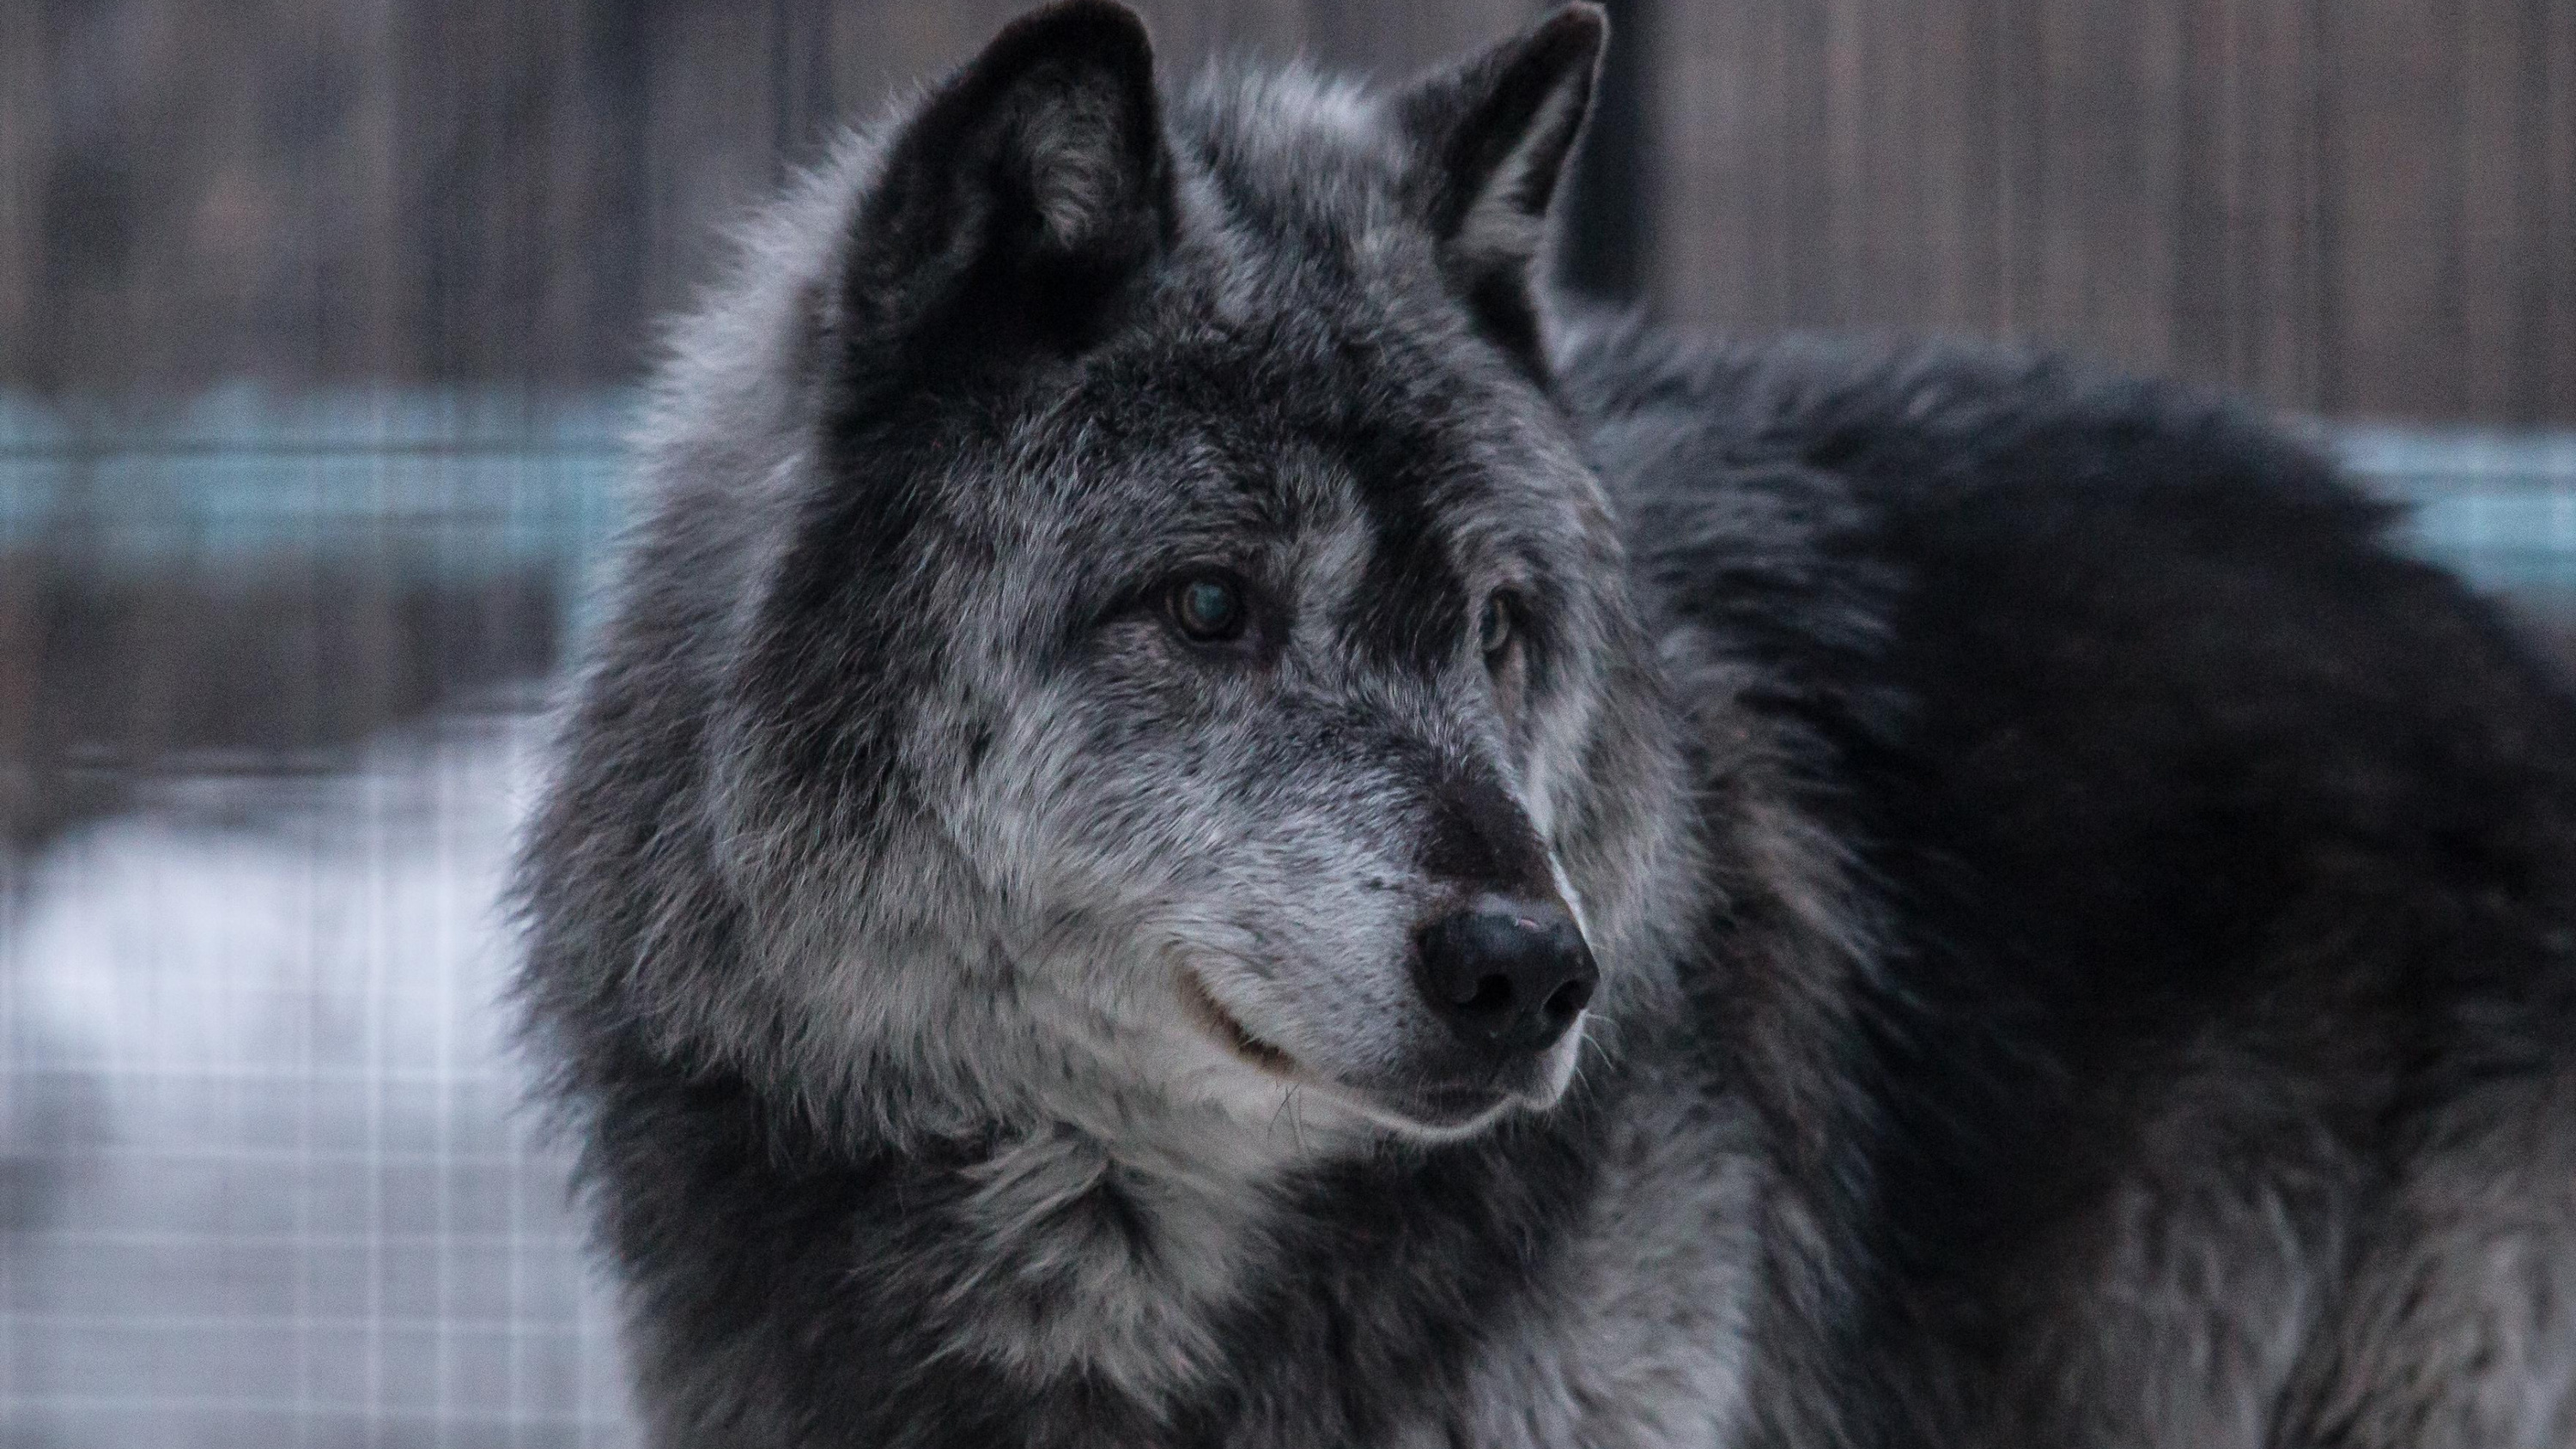 Ложная тревога: видео с волком, напавшим на людей в Оренбуржье, оказалось фейковым